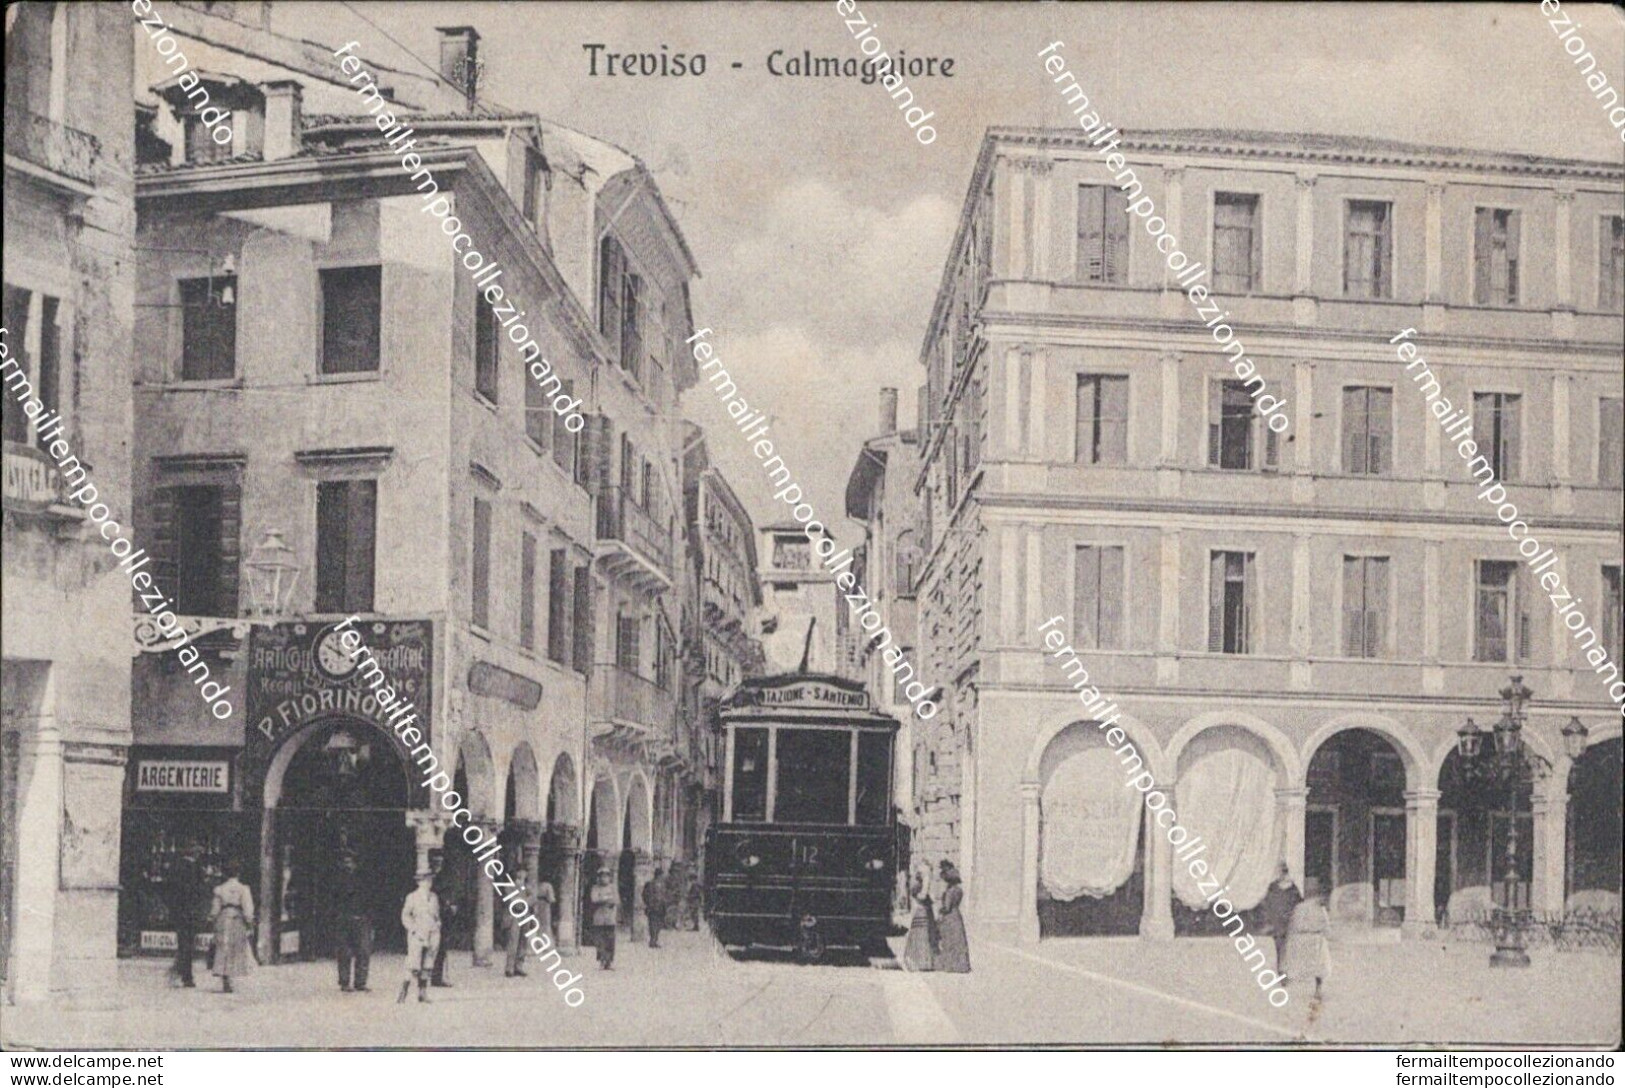 Az208 Cartolina Treviso Calmaggiore Tram Bella!! - Treviso